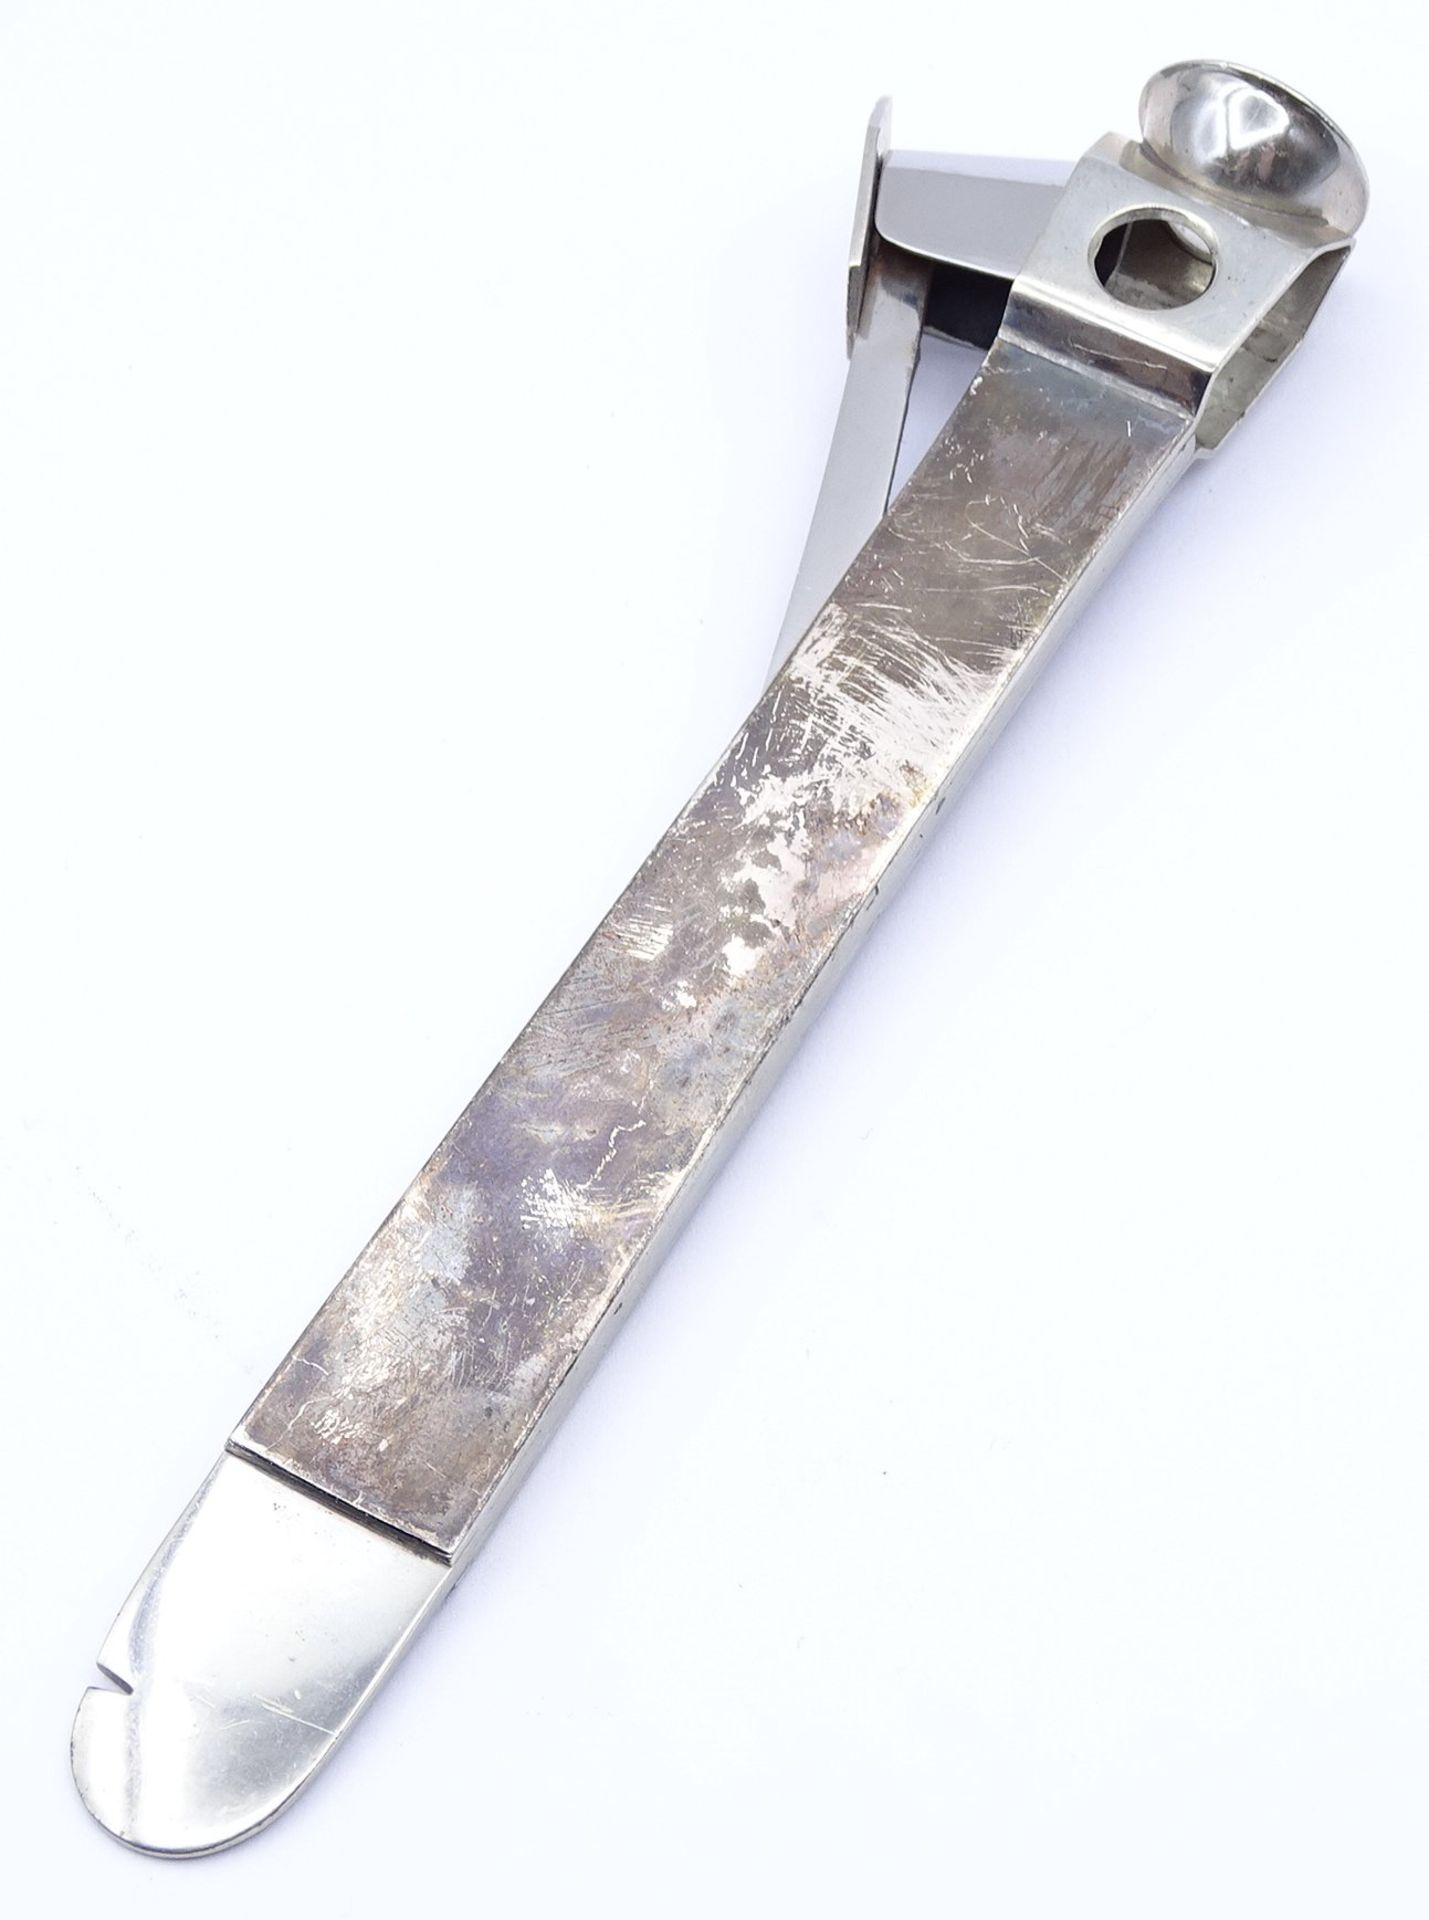 Zigarrenabschneider mit Silbermontur - Sterlingsilber, Gravur G.K. 21.1.62, L. 16cm - Image 2 of 3